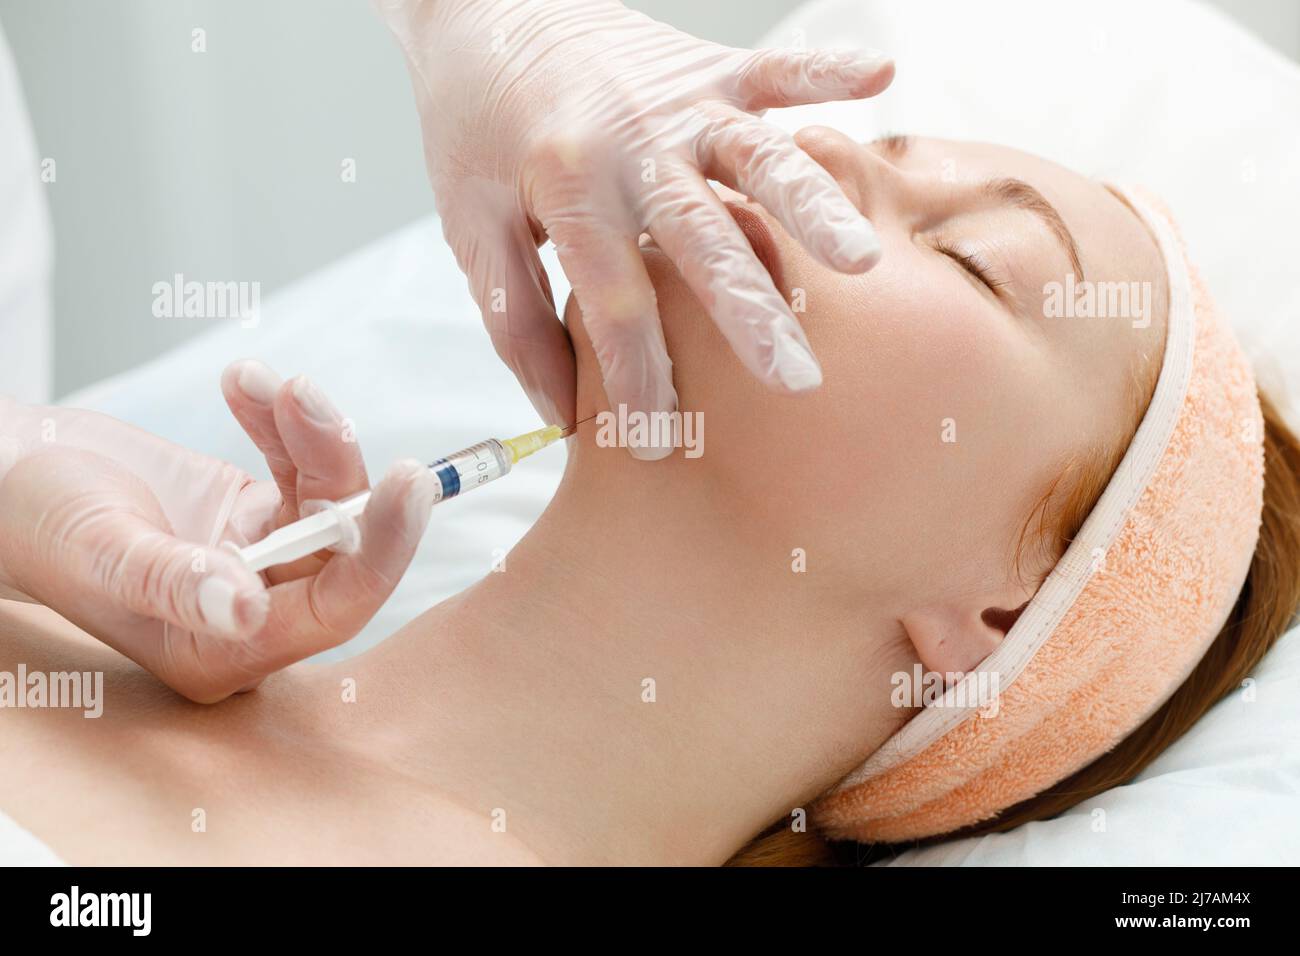 Der Kosmetologe führt das Kinnlift-Verfahren durch Injektionen von Schönheitsinjektionen durch. Arzt injiziert Hyaluronsäure in das ching einer Frau als Gesichtsbehandlung Stockfoto